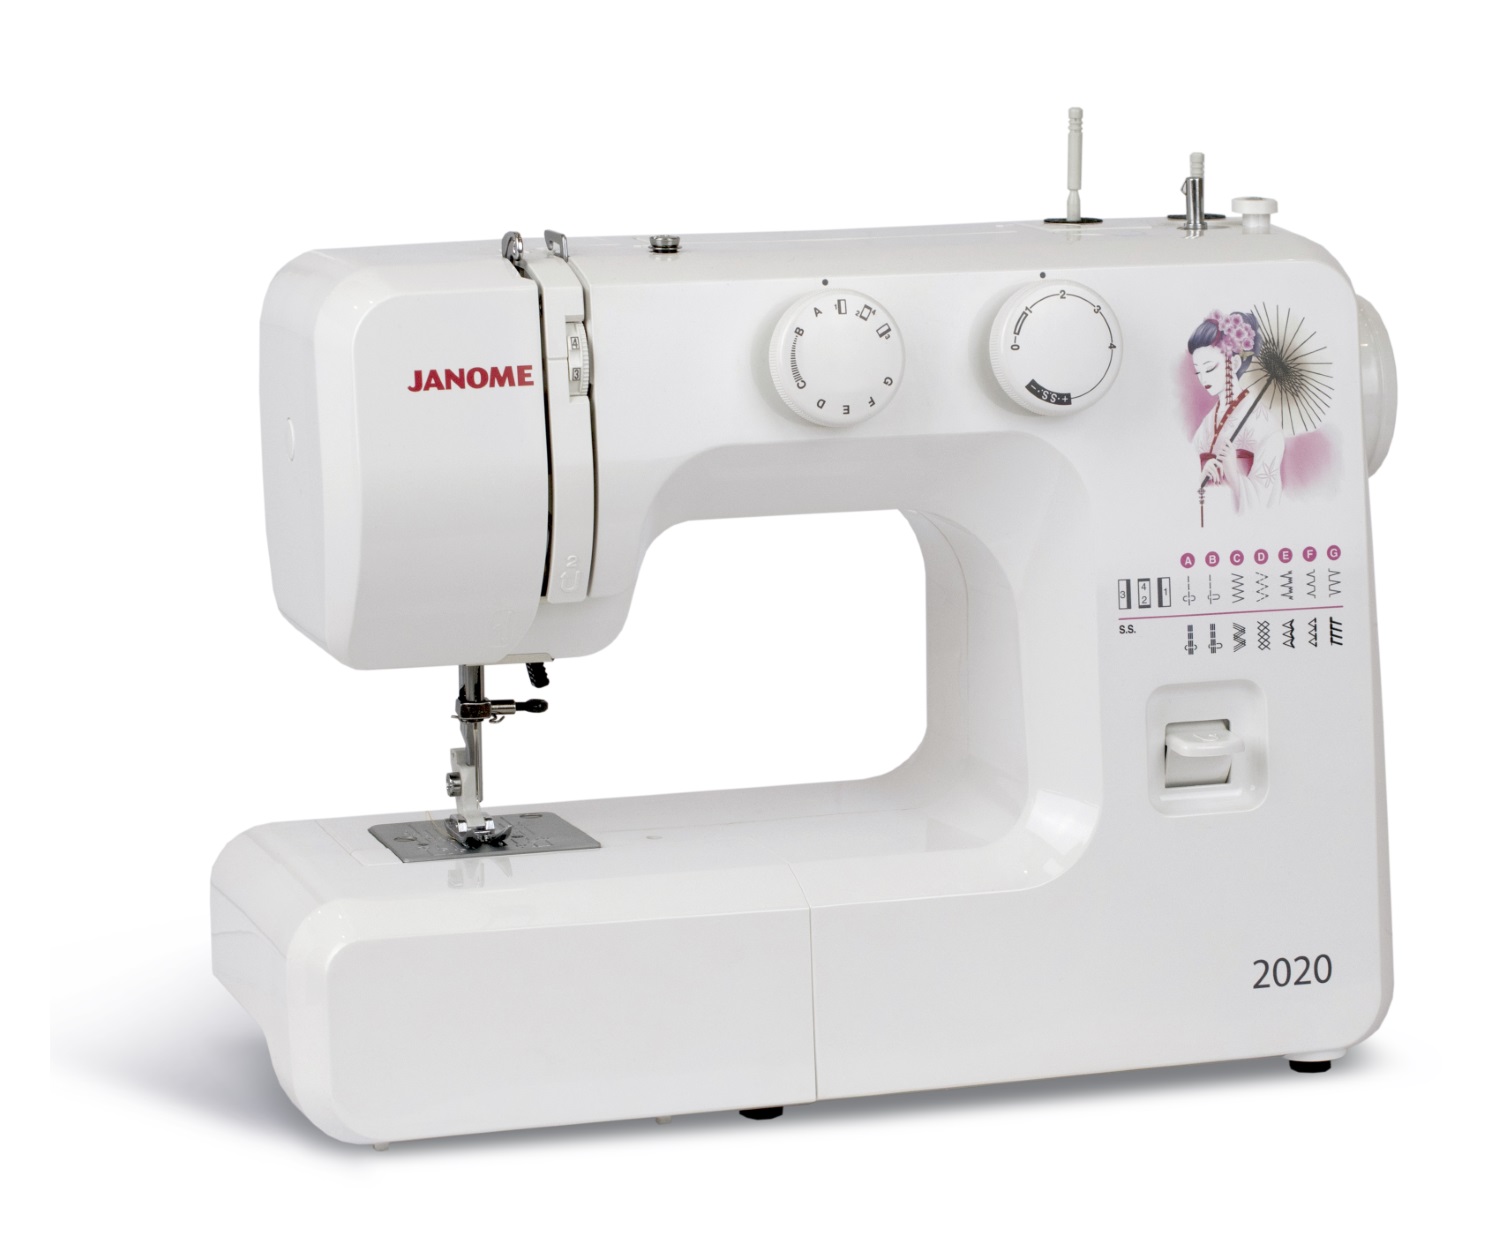 Купить недорогую швейную машинку для домашнего пользования. Джаноме 2020. Швейная машина Janome 495. Швейная машинка Janome 2005 года. Швейная машина Janome 5519.